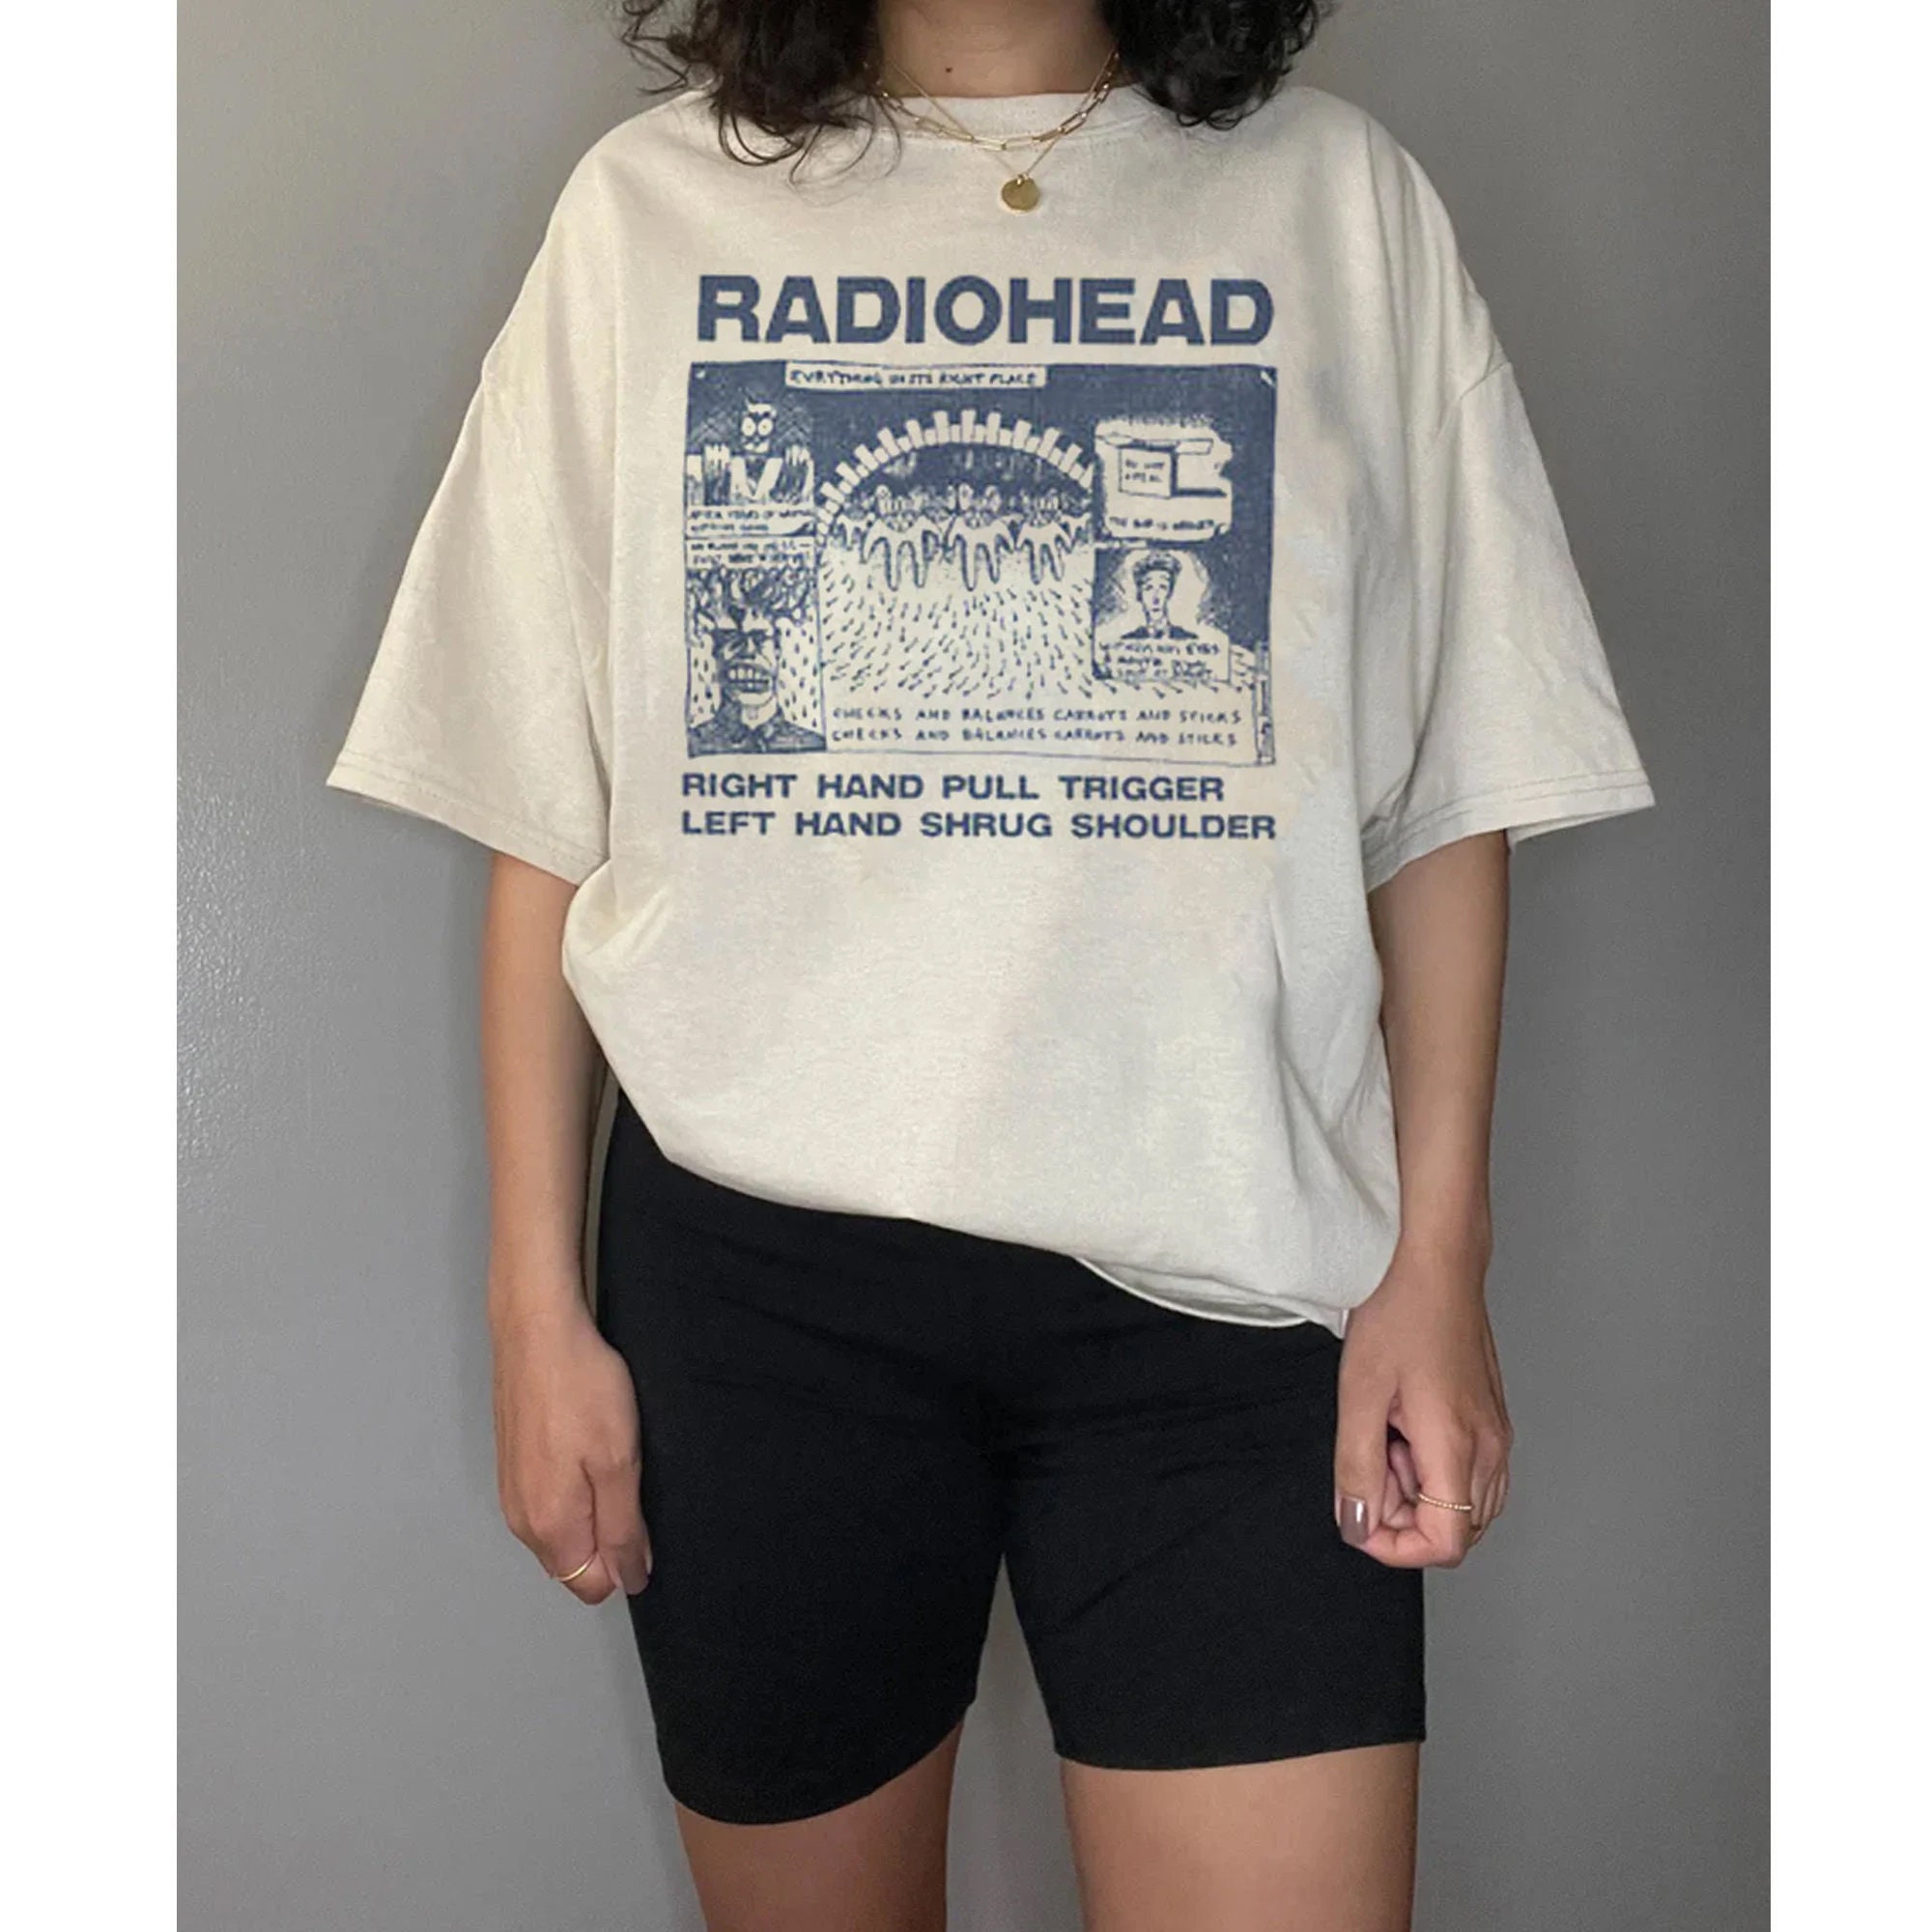 Vtg radiohead unisex shirt,Radiohead Band T-Shirt, Radiohead Shirt